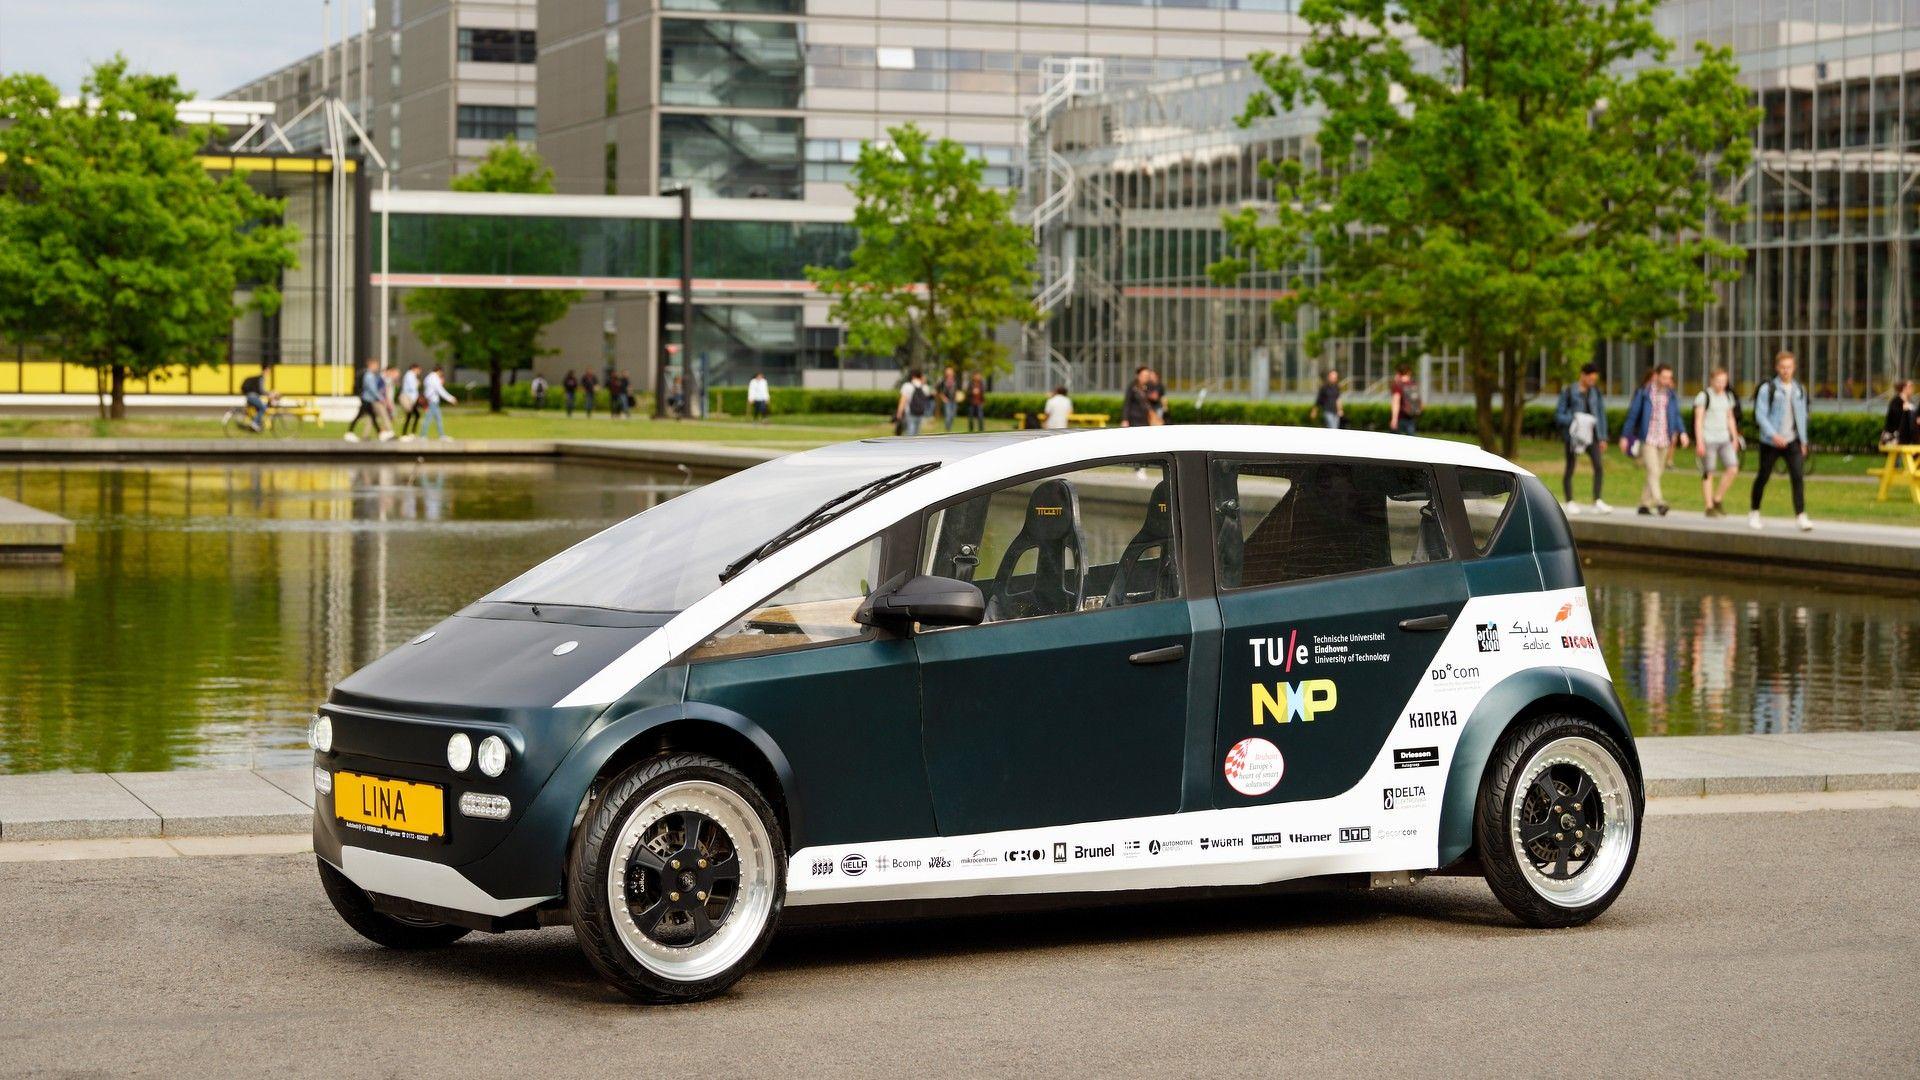 lina-bio-composite-car.jpg